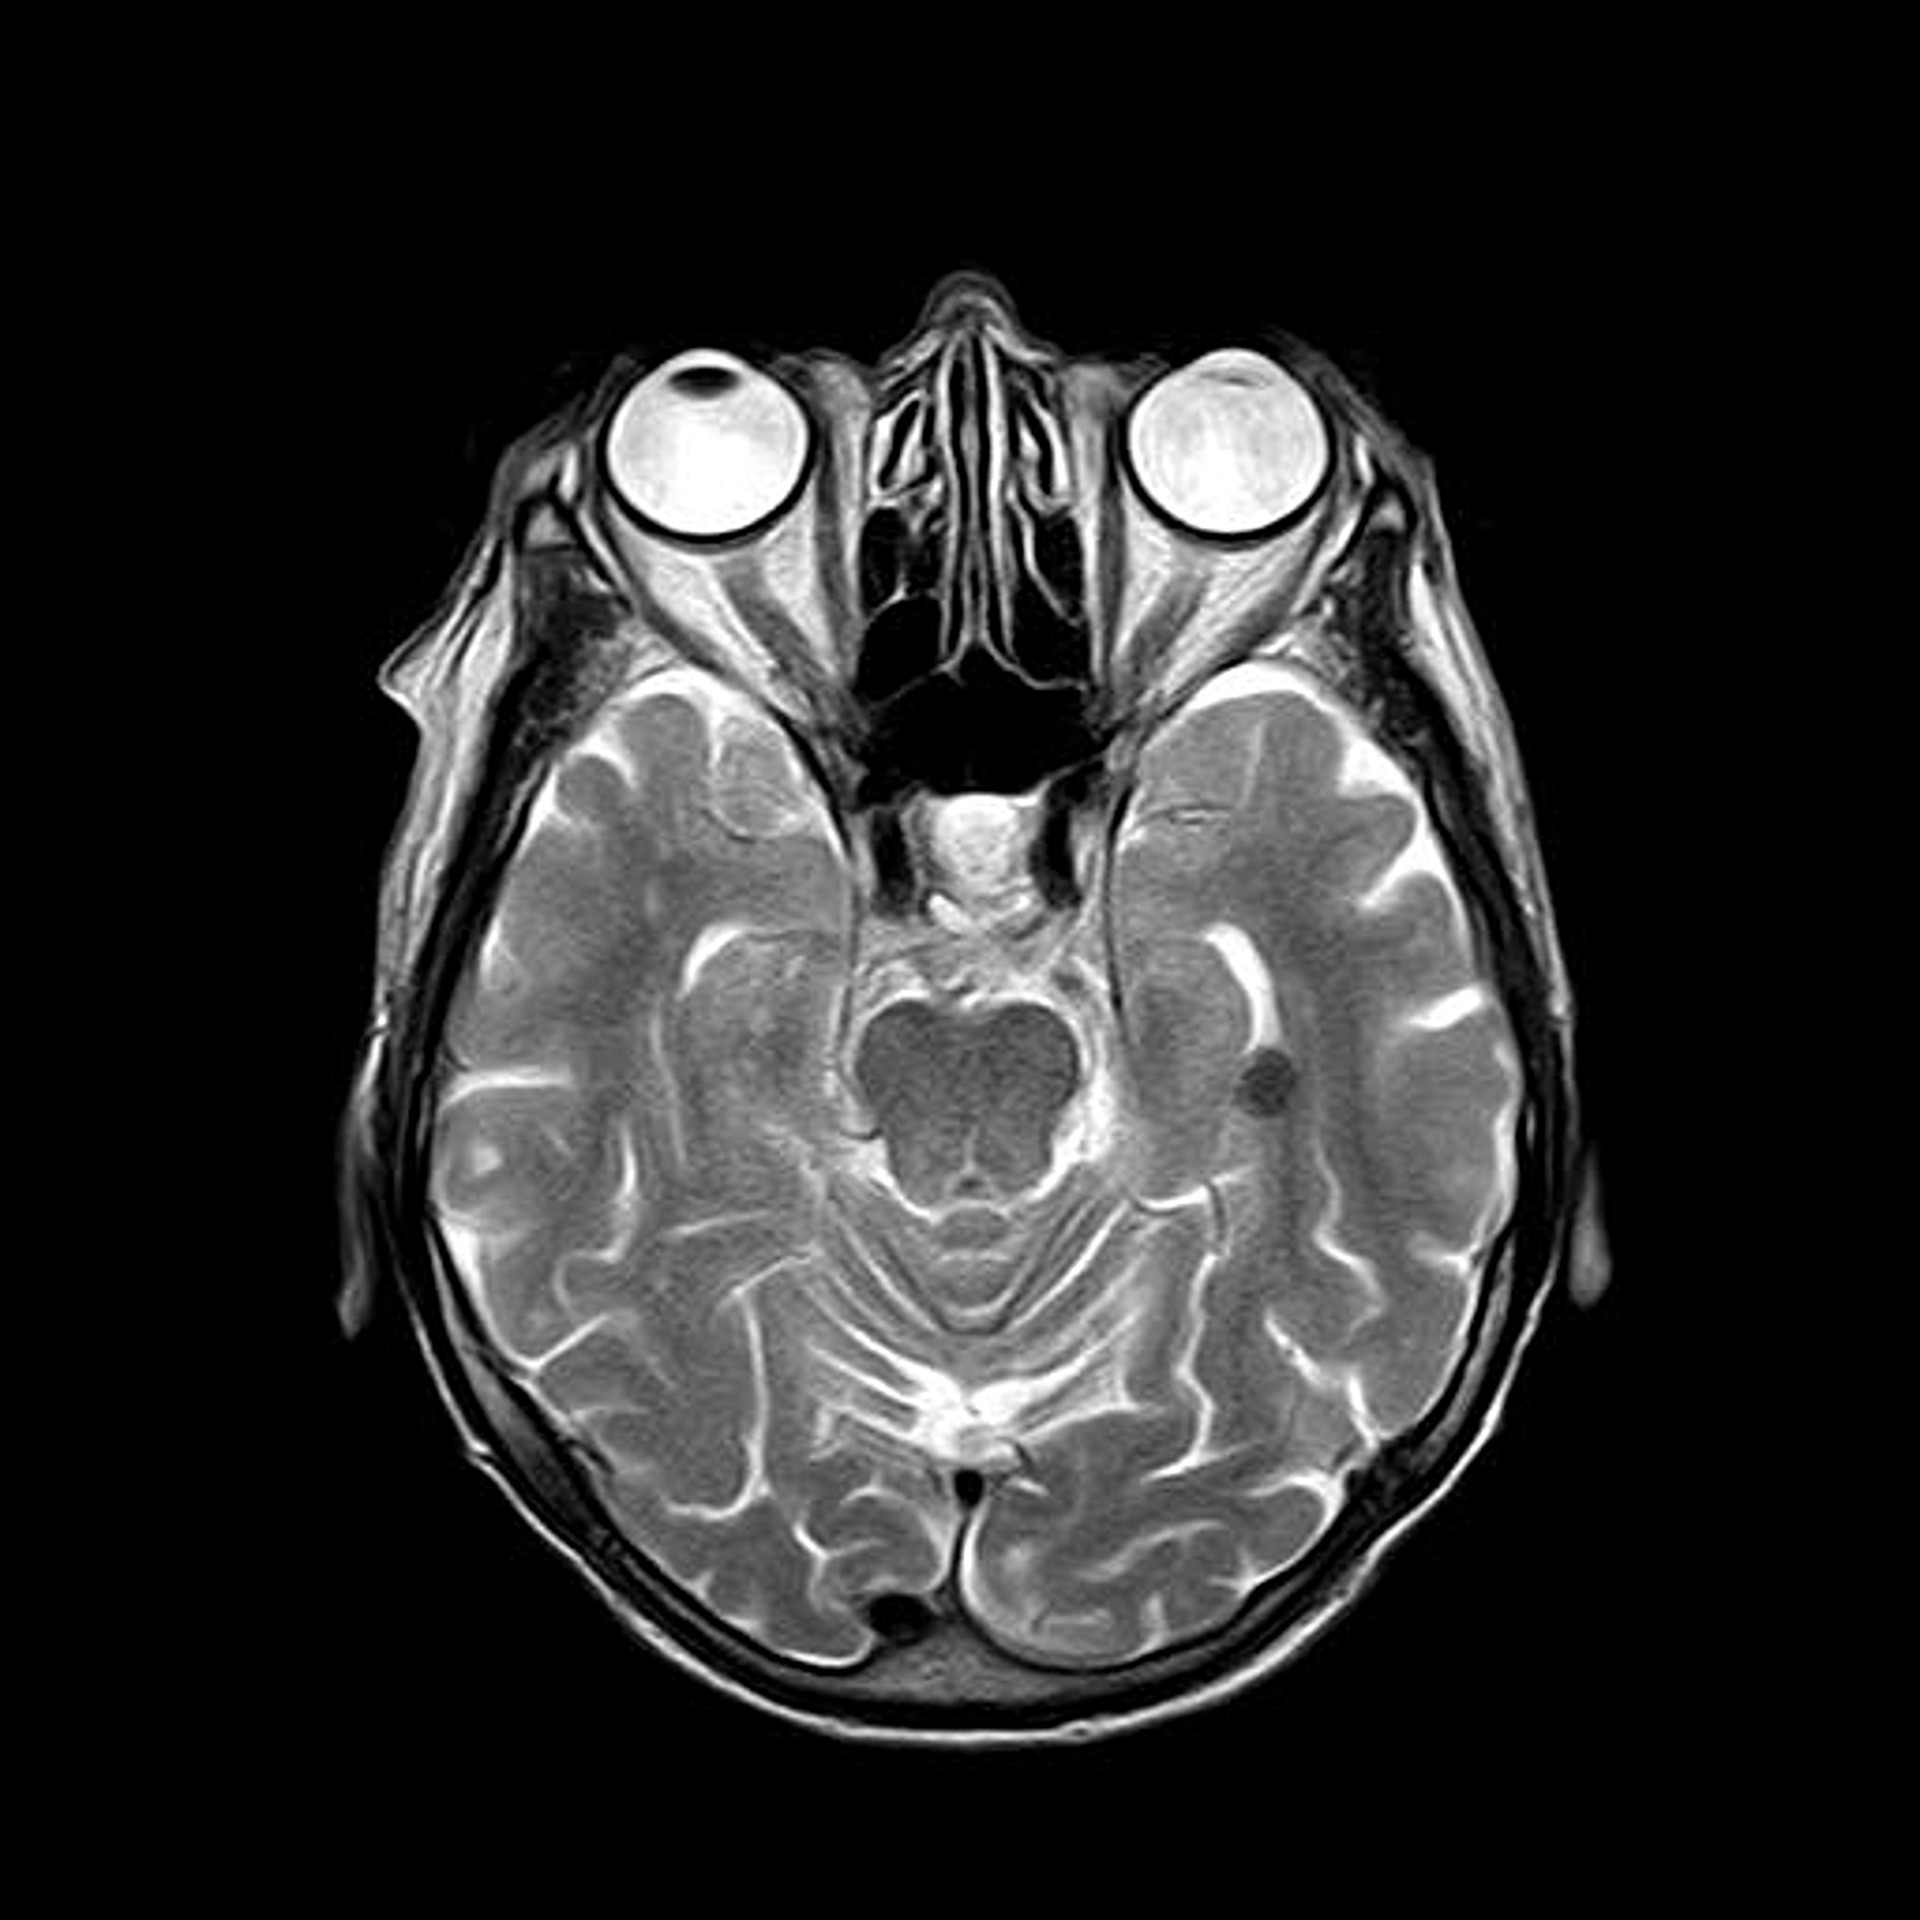 MRI photo of skull and internal parts.